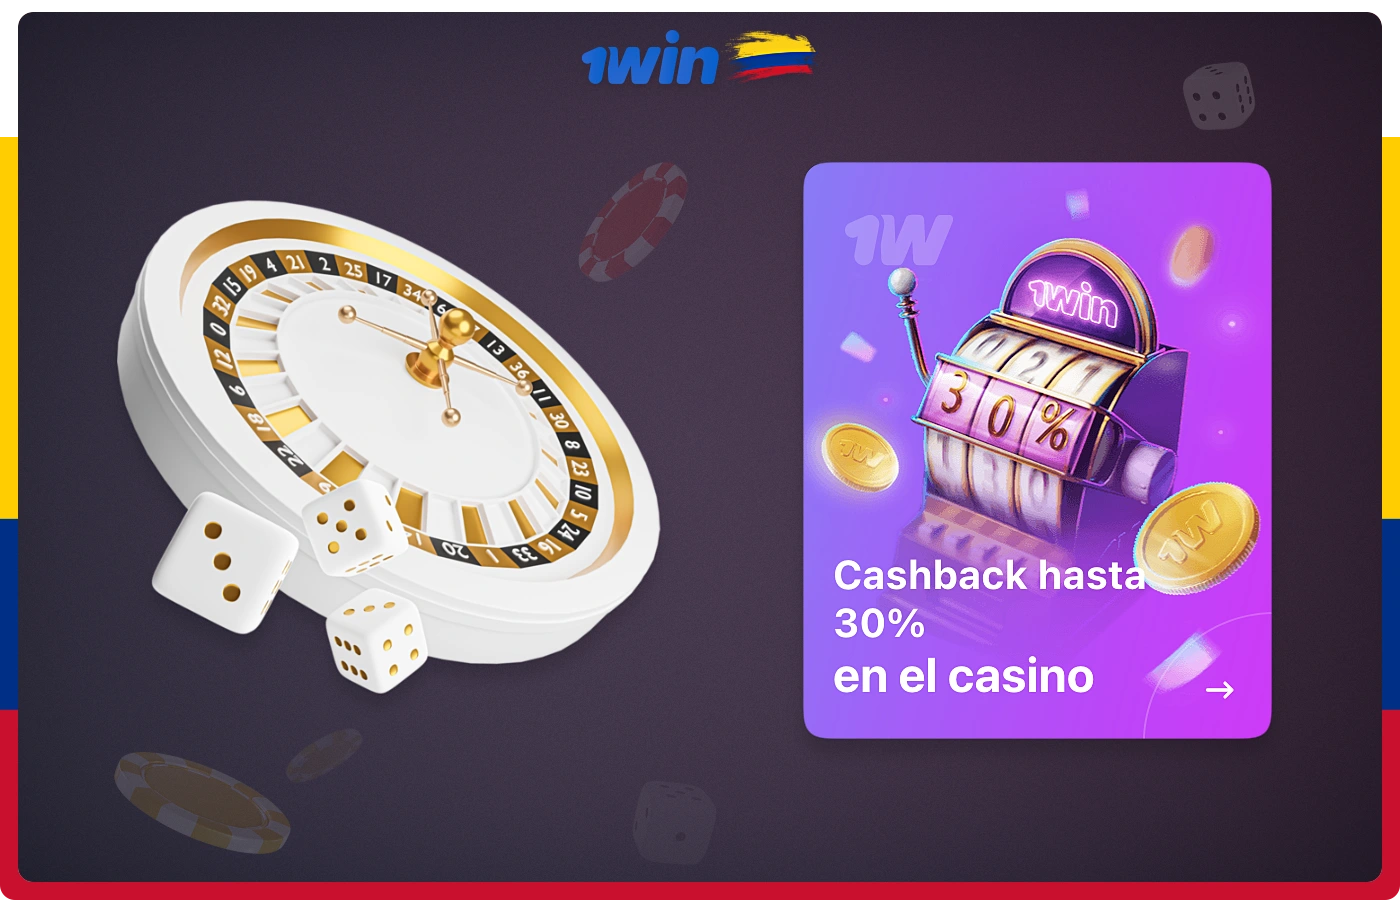 Los usuarios del casino en línea 1win de Colombia tienen acceso a cashback, lo que les permite recibir una parte de su gasto